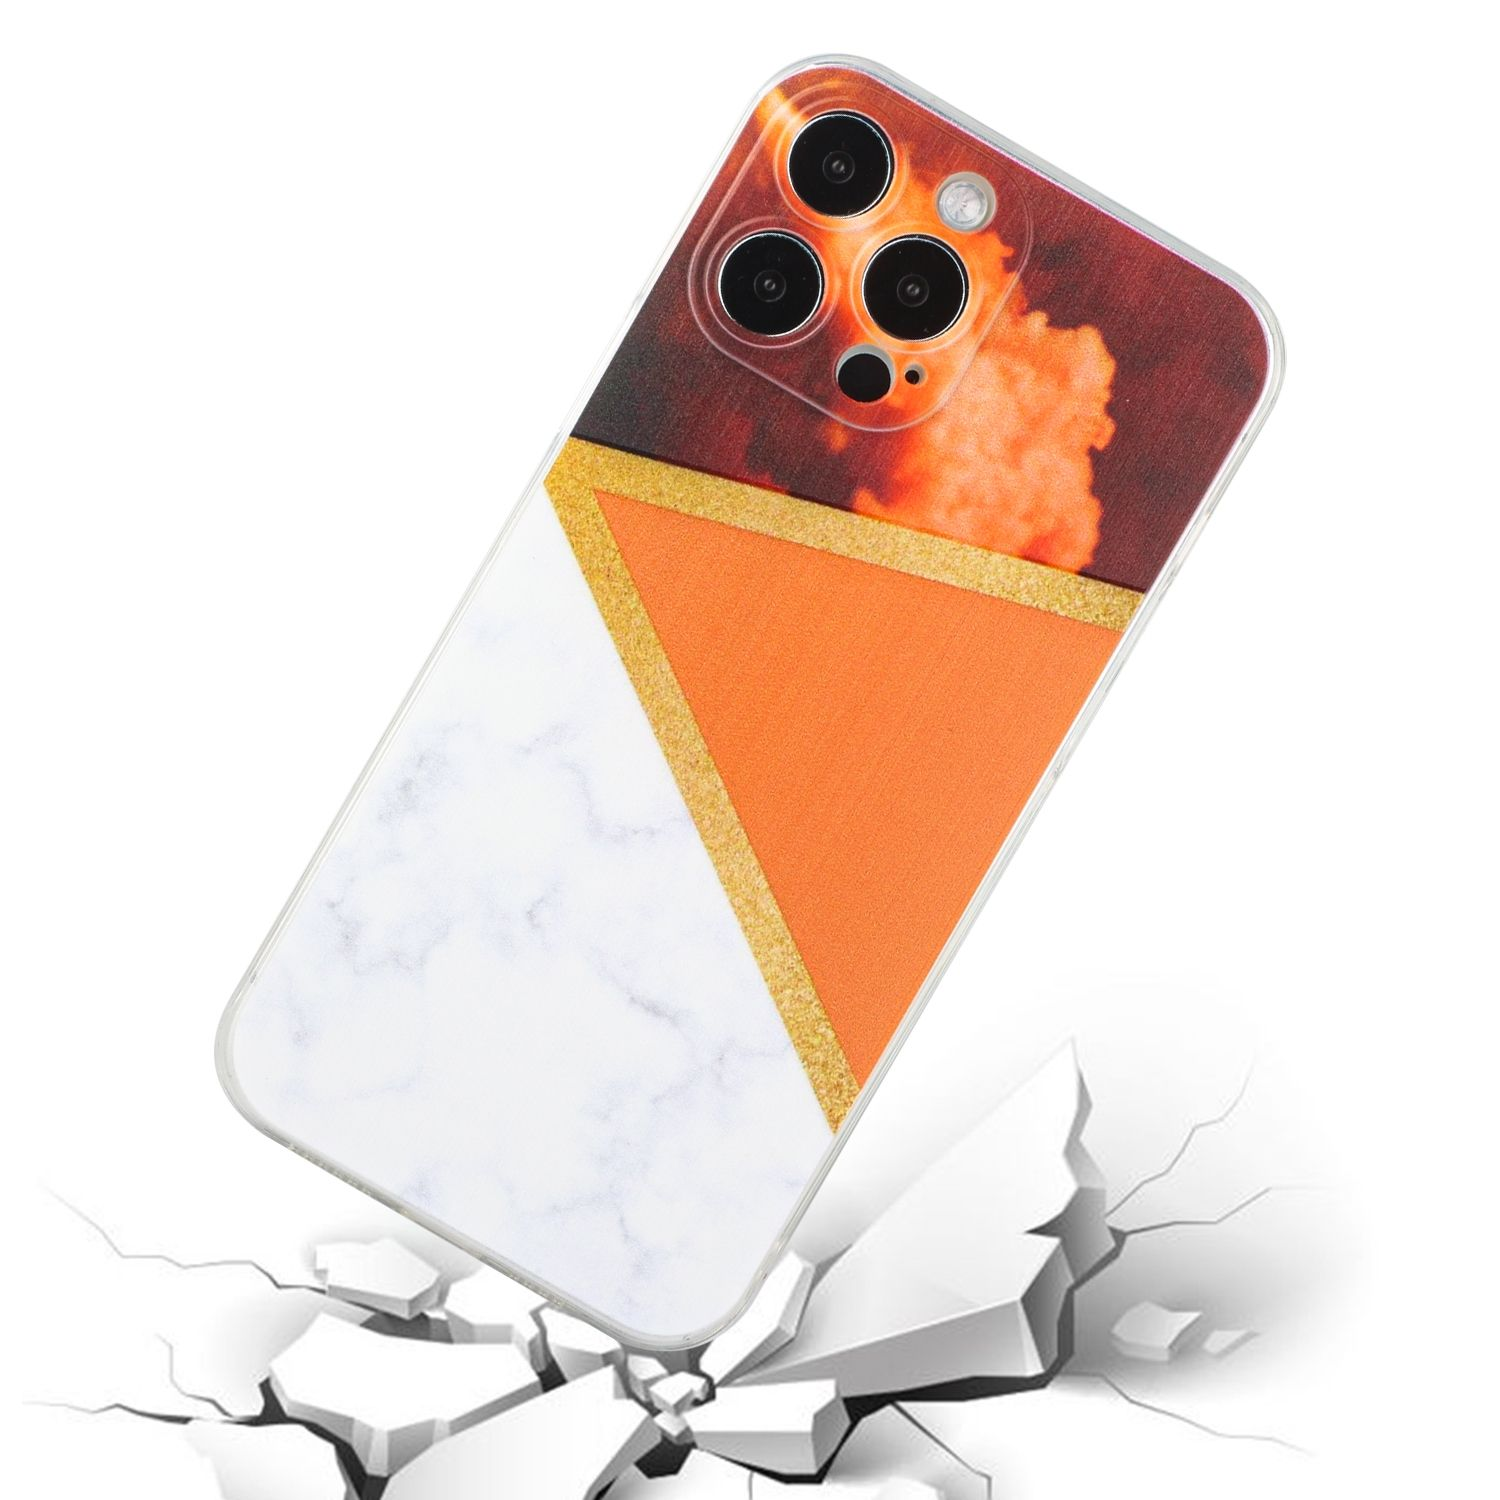 KÖNIG iPhone 12 Backcover, DESIGN Case, Pro, Orange Apple,